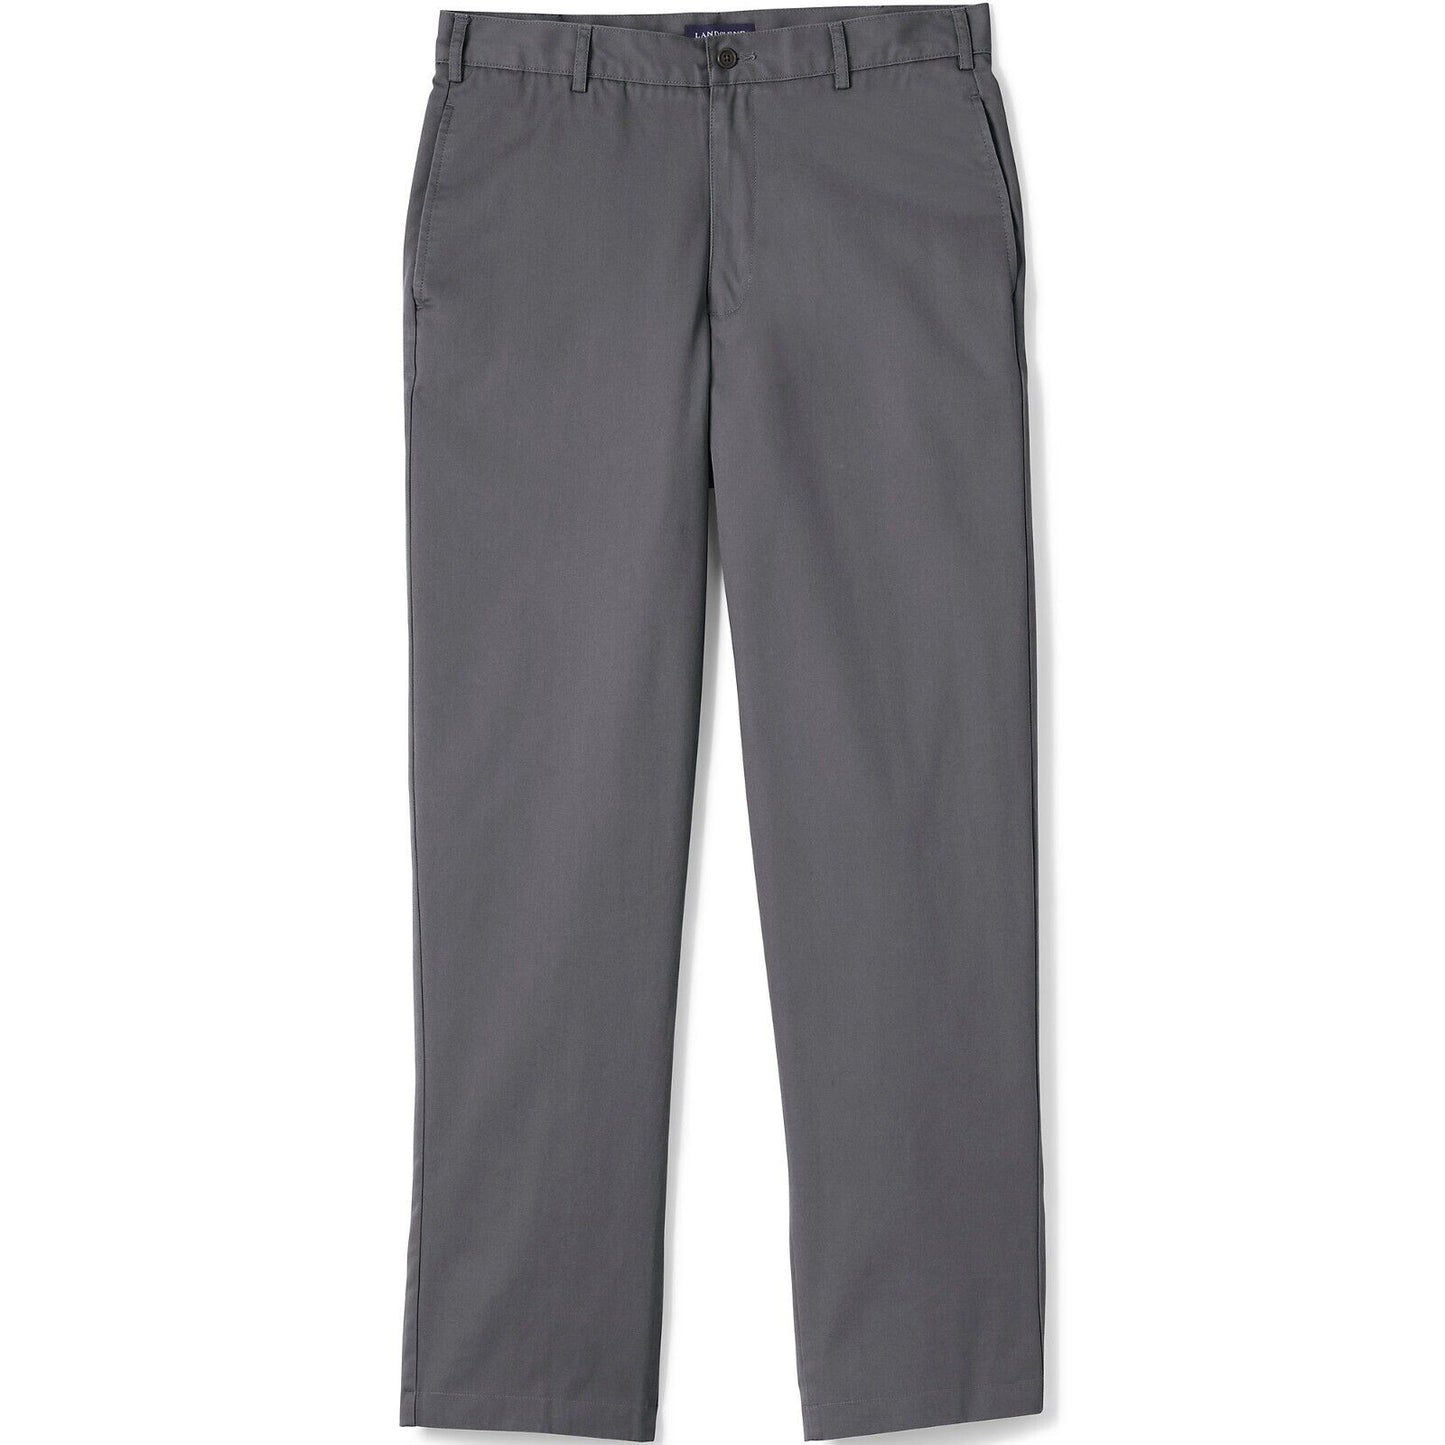 Men's Blend Plain Front Chino Pants Size 31